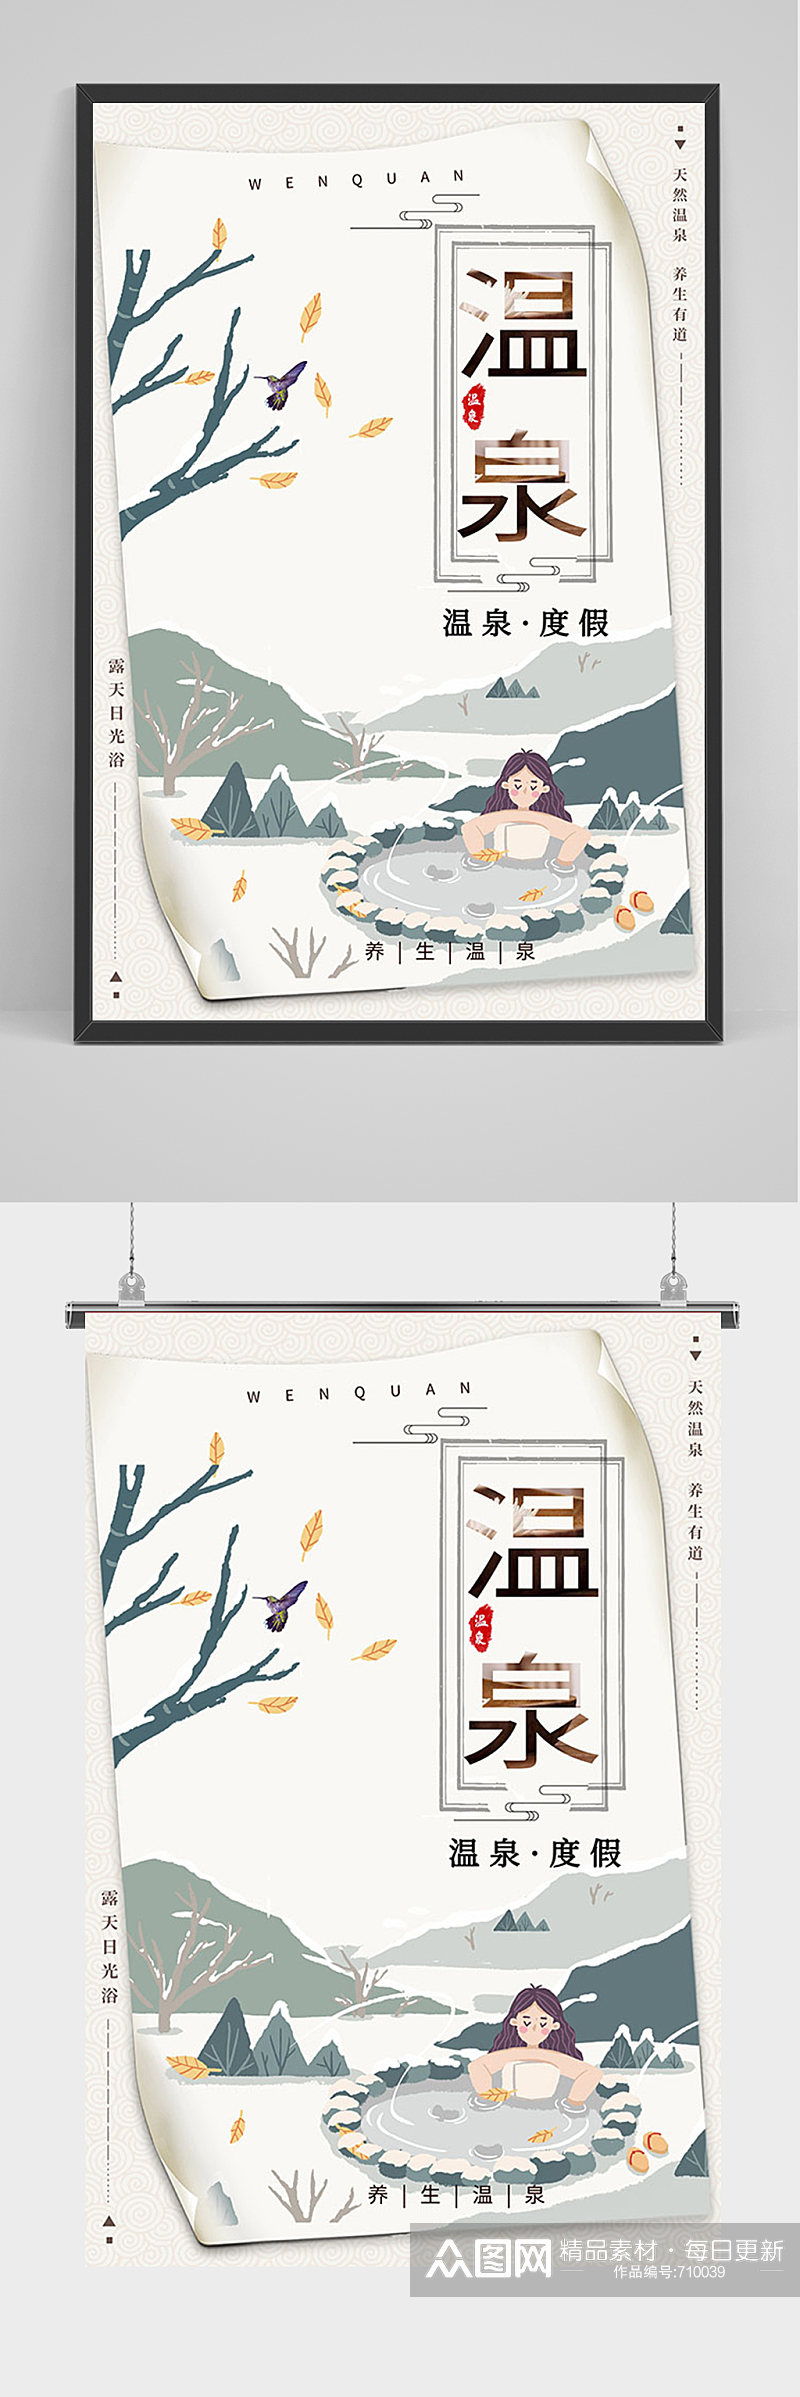 中国风温泉度假海报素材